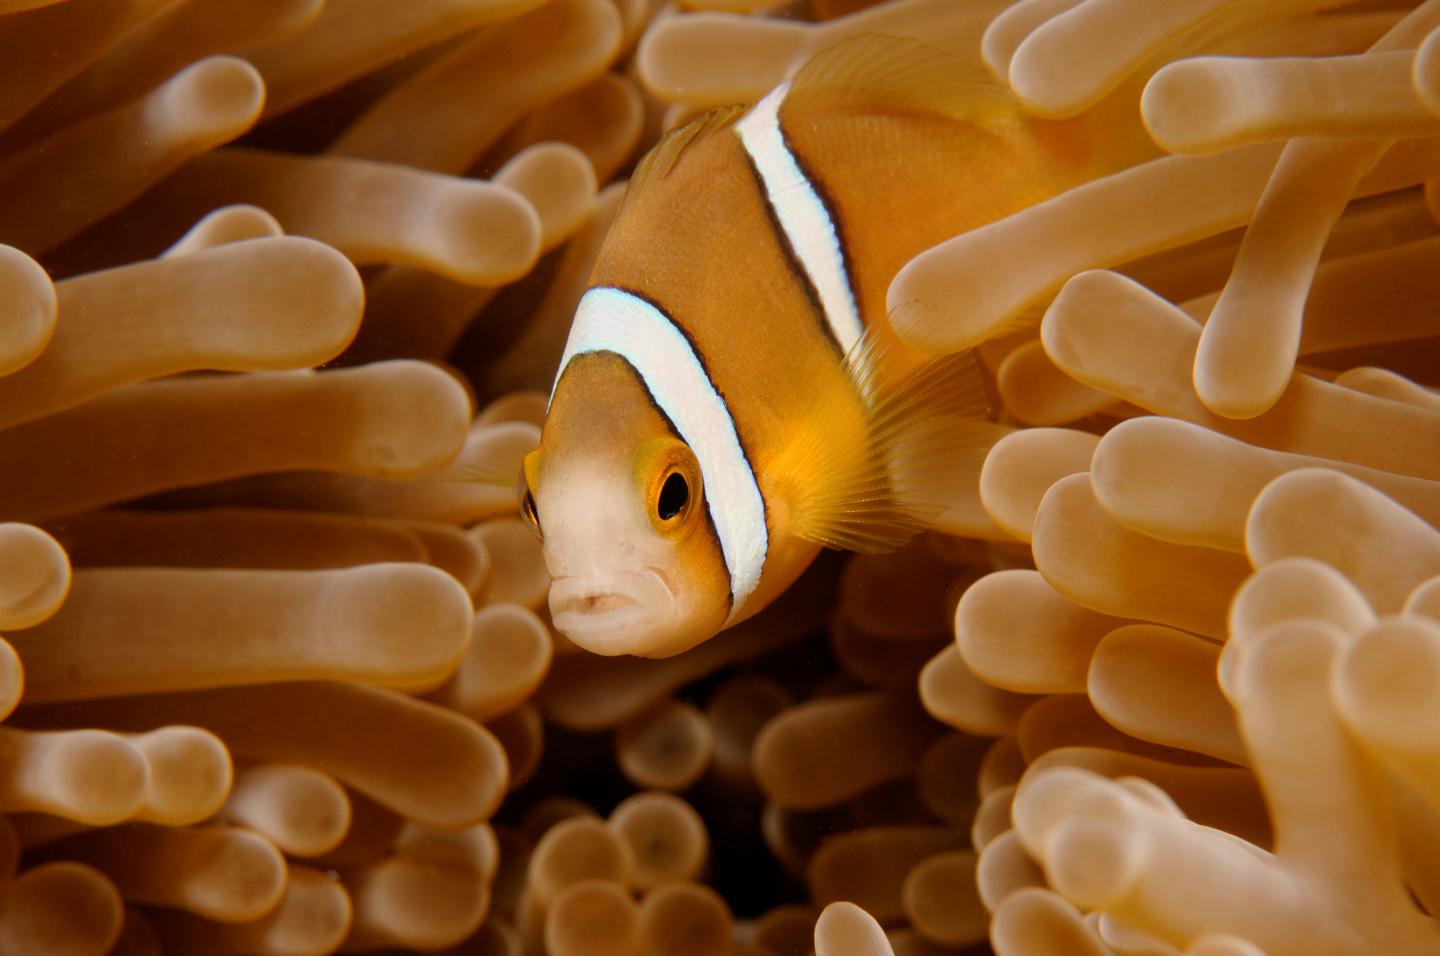 Artificial Lighting Harming Young Clownfish